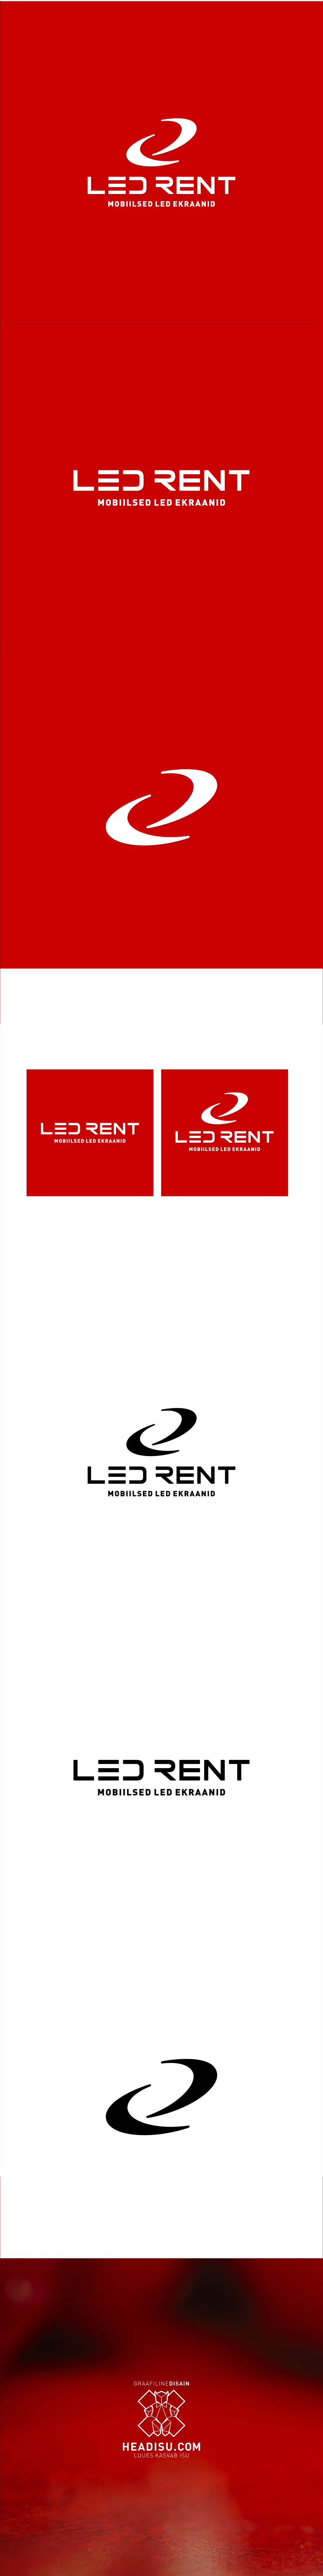 LEDRent-logo-2